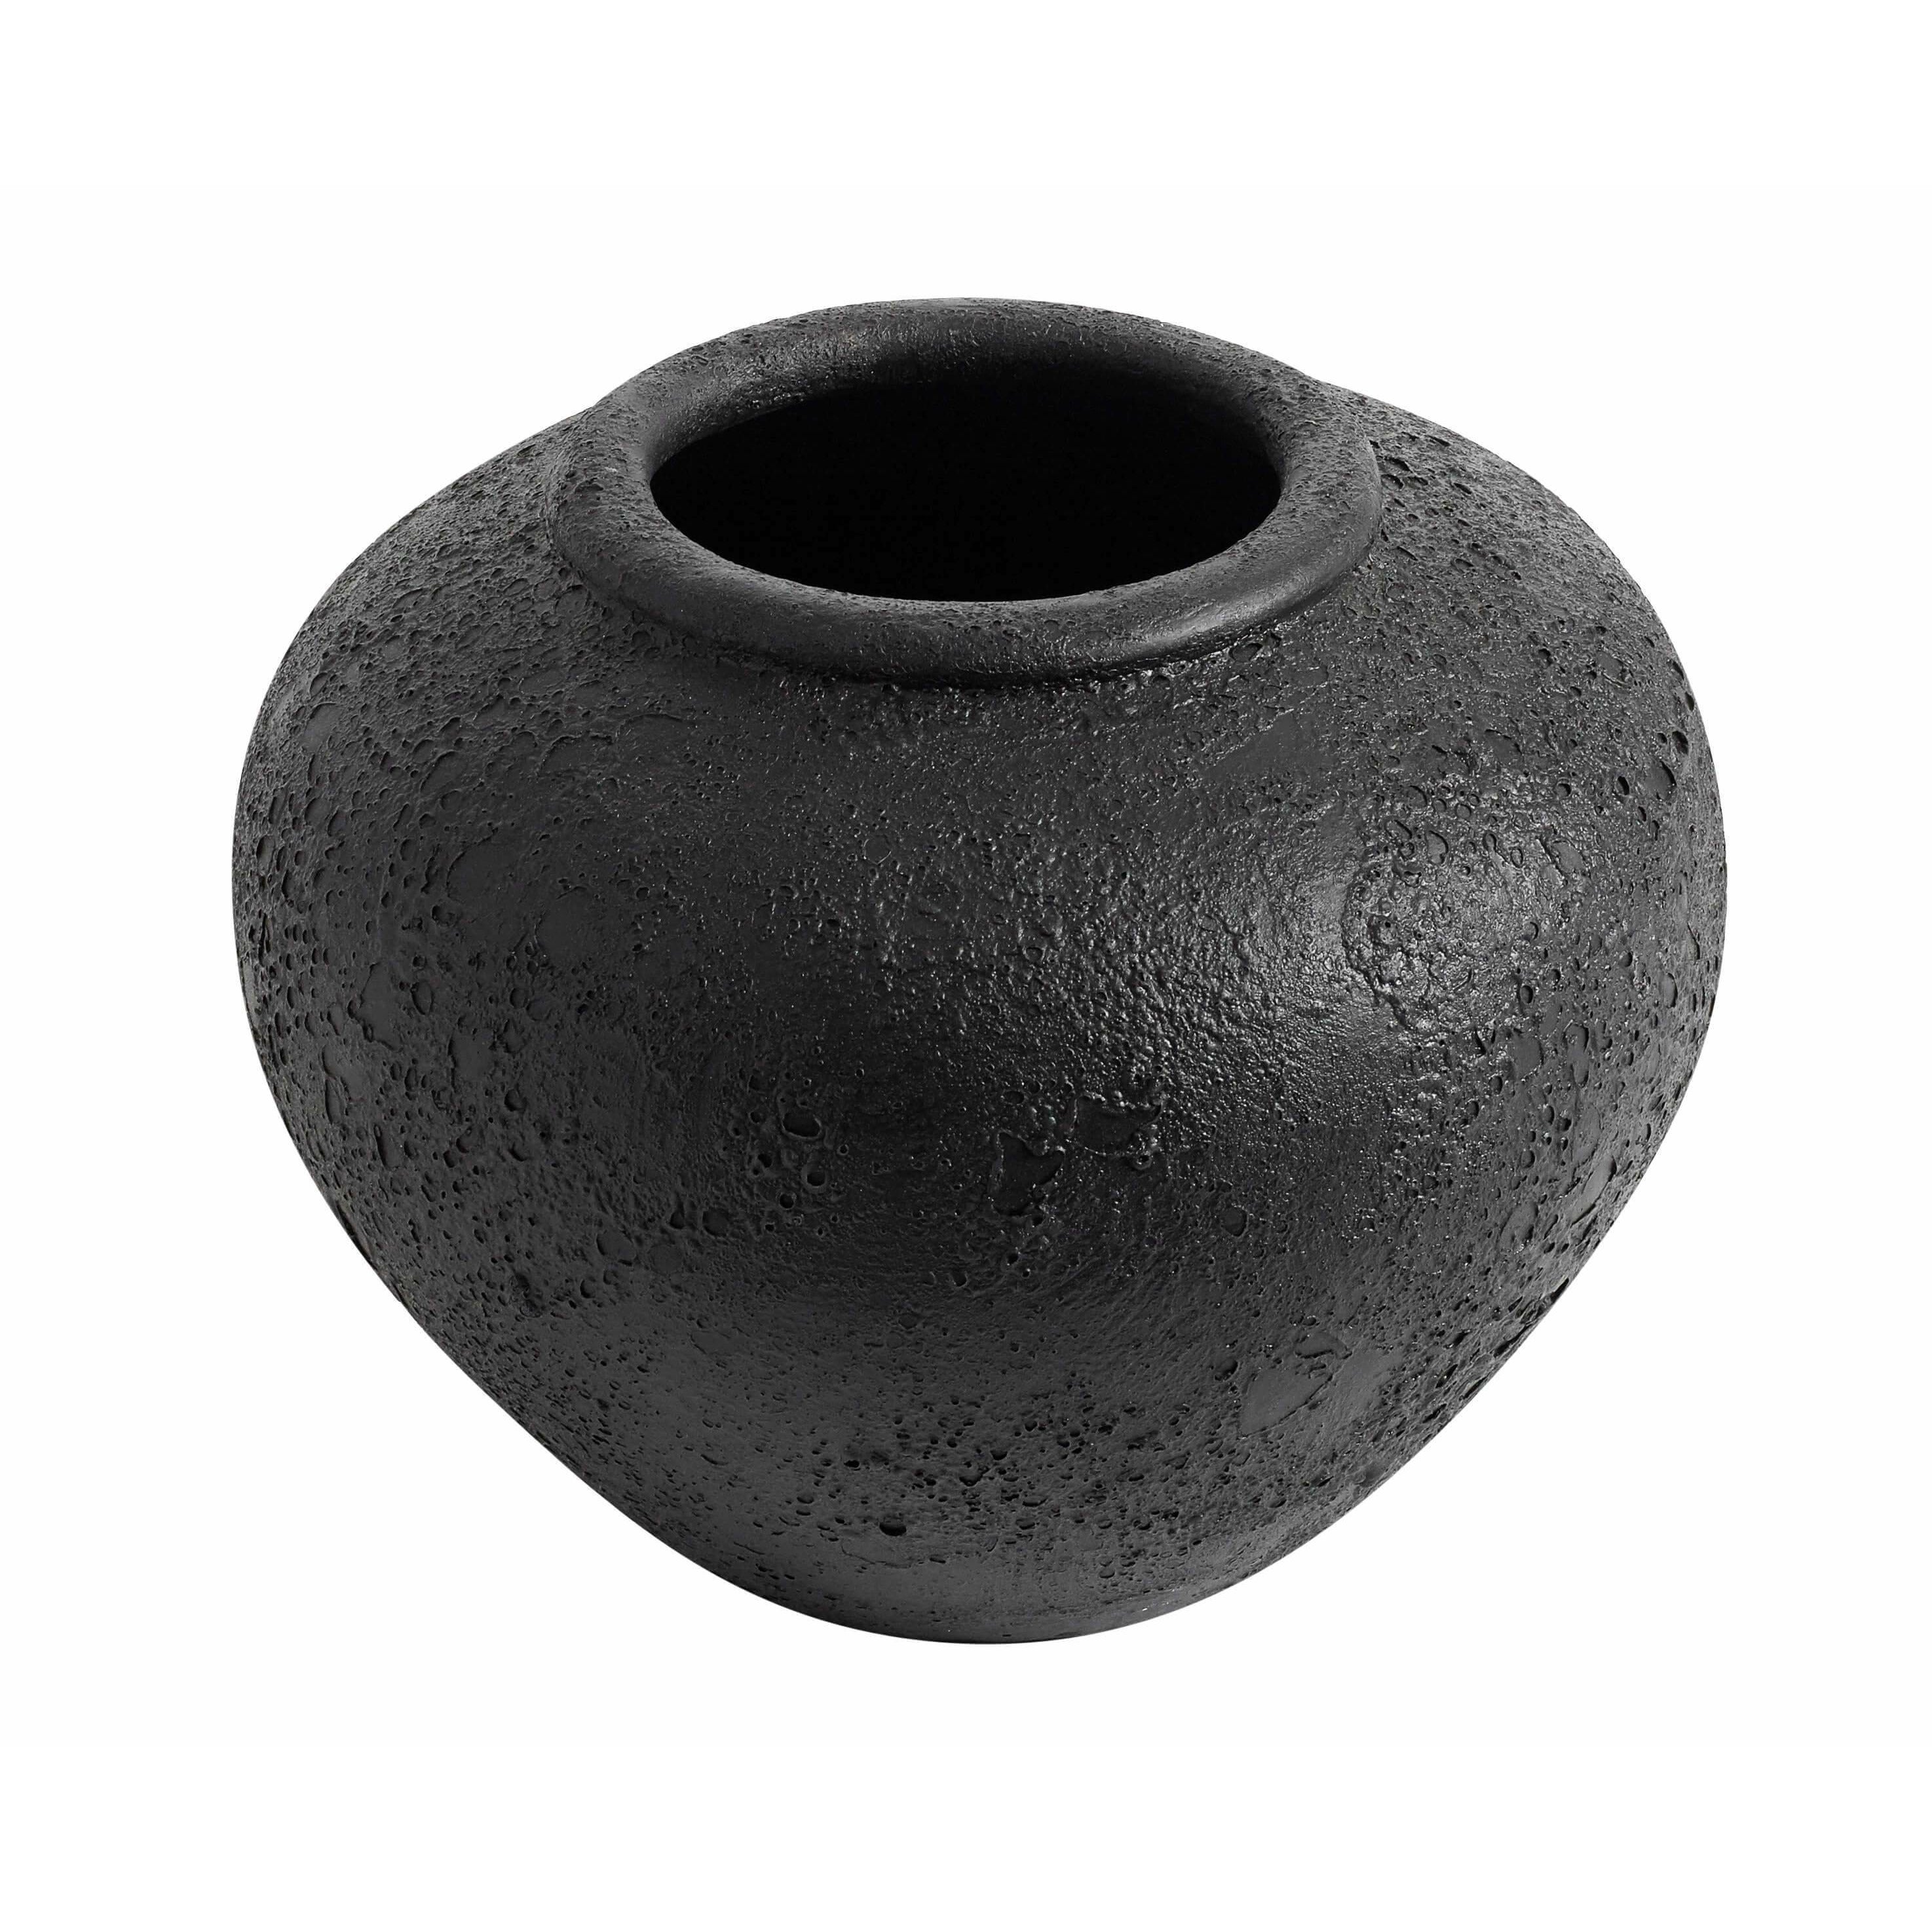 Muubs Luna Vase Black, 26cm